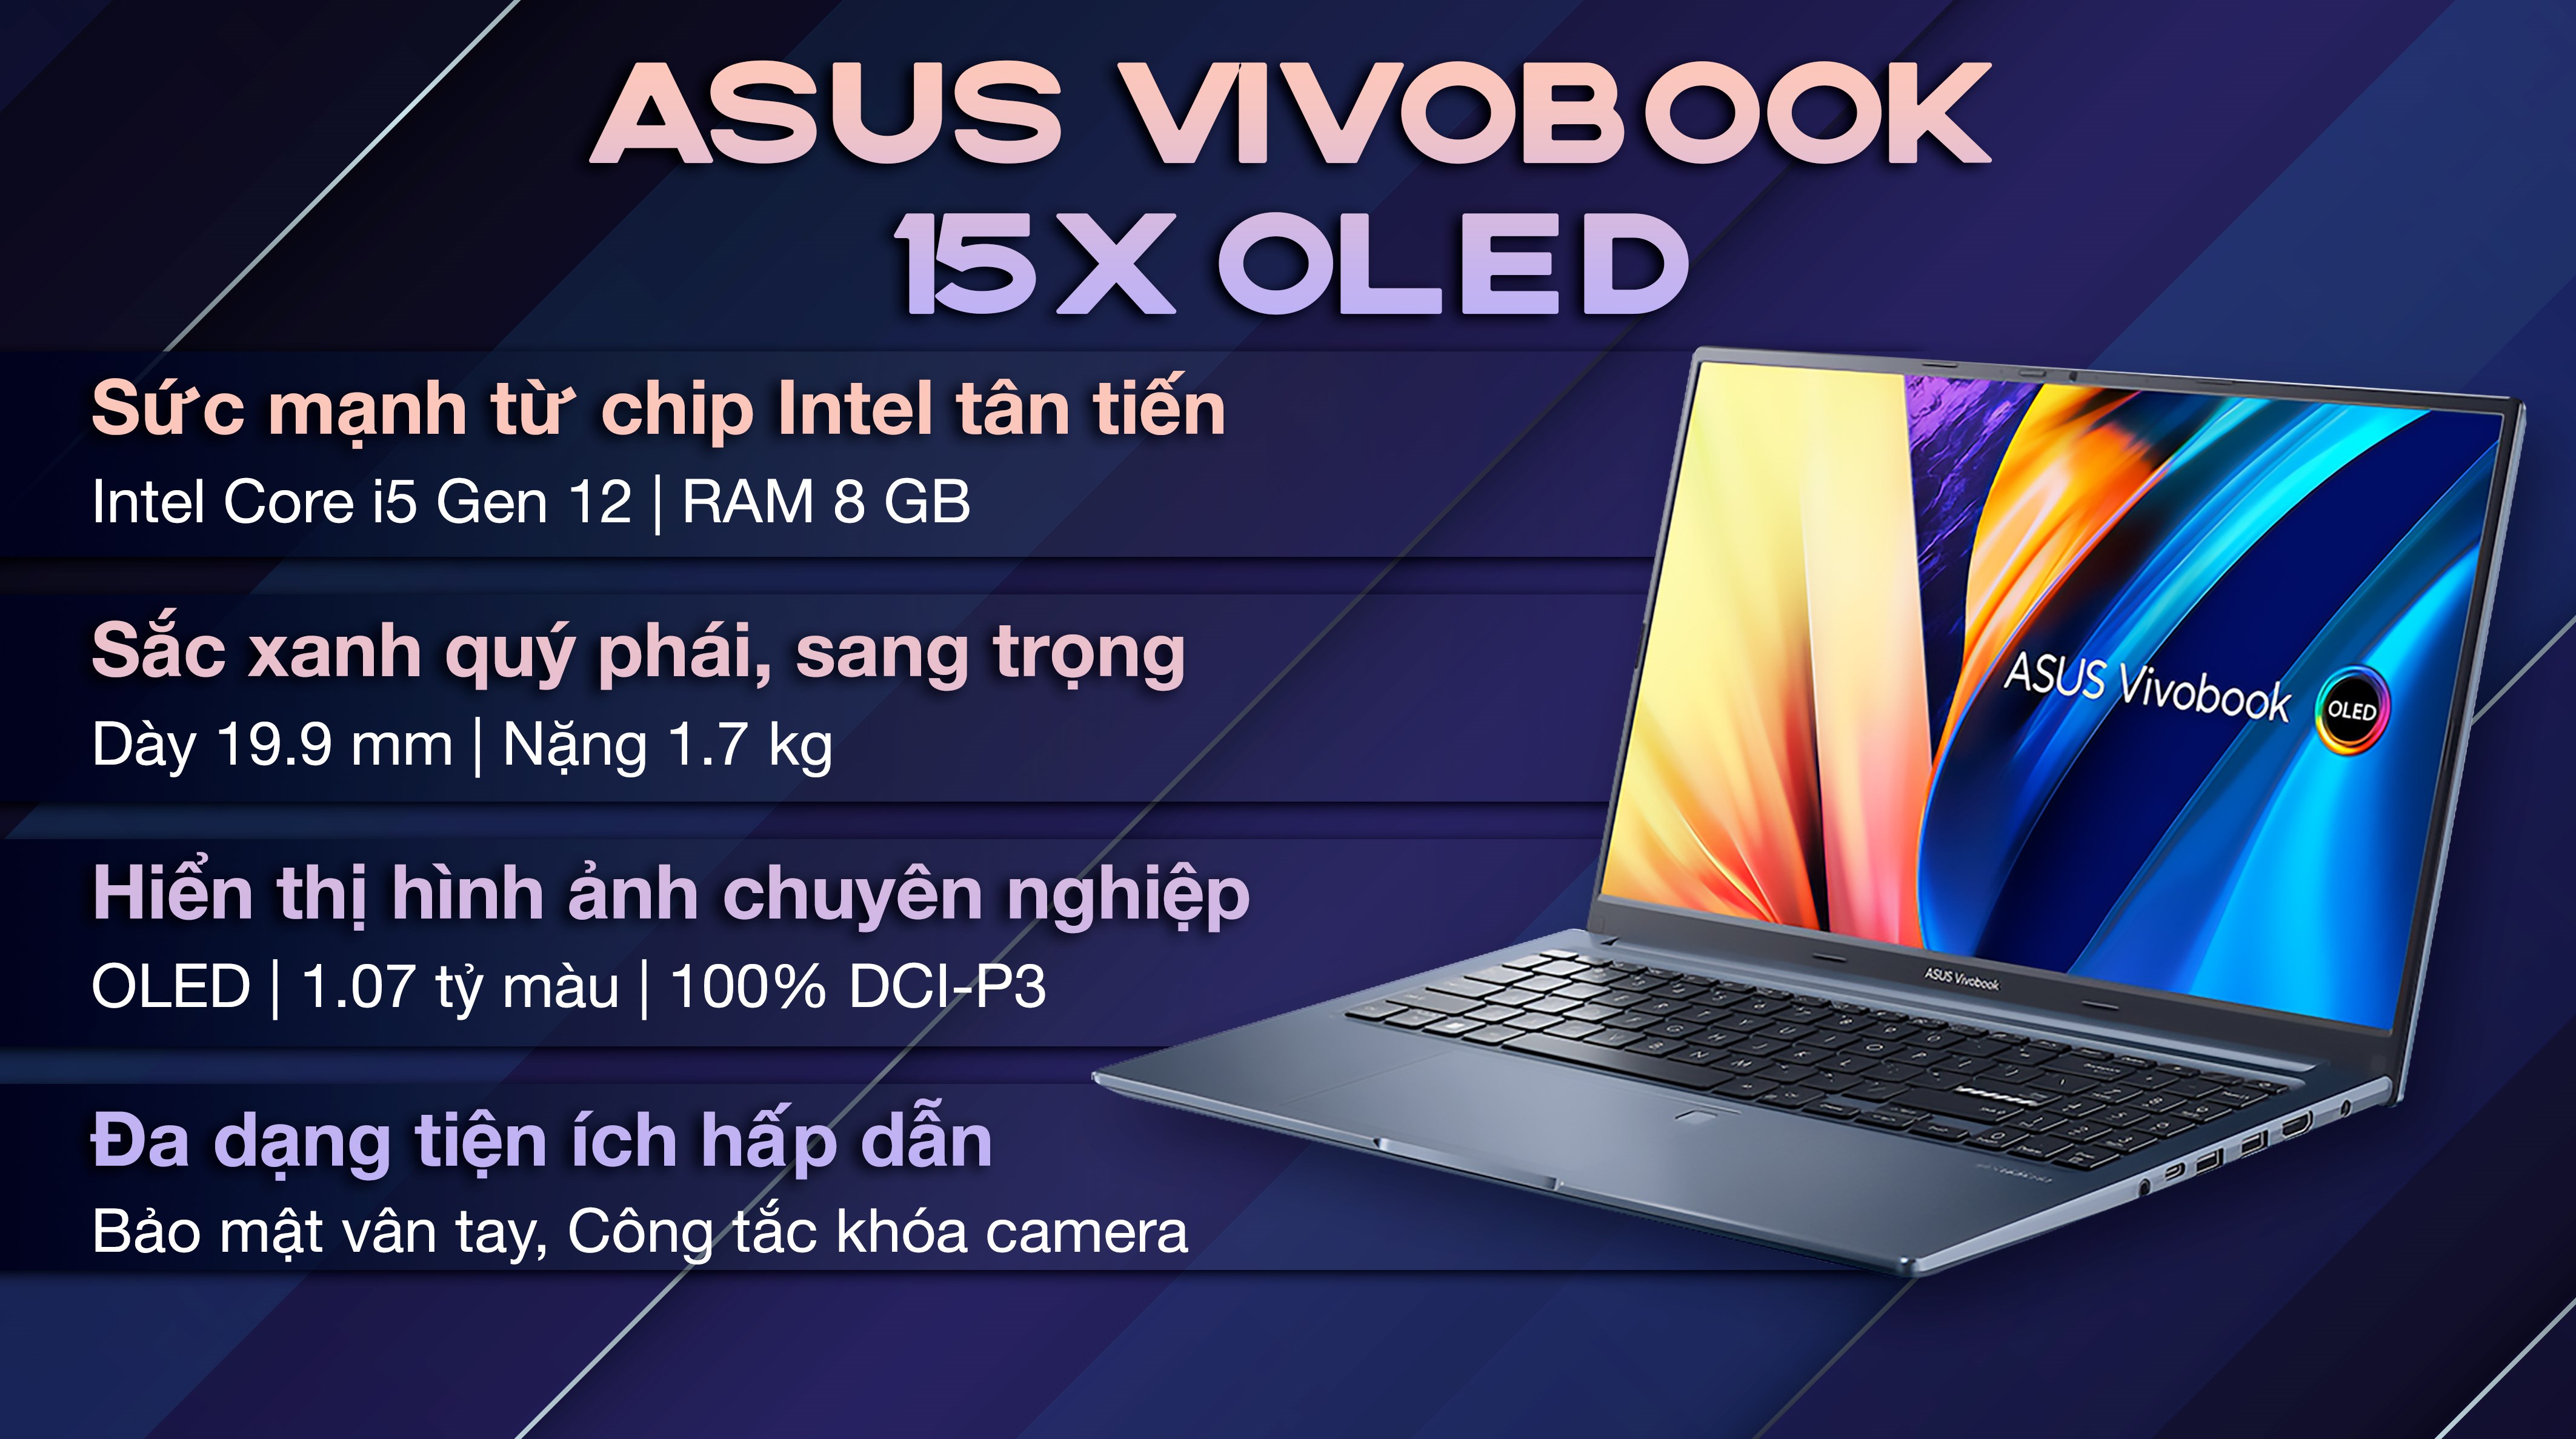 Laptop Asus VivoBook 15X OLED A1503ZA i5: Bạn đang muốn tìm kiếm một chiếc laptop đẹp, tiện dụng và chất lượng không thể phủ nhận? Hãy đến ngay với Asus VivoBook 15X OLED A1503ZA i5! Với thiết kế tinh tế, cấu hình mạnh mẽ và màn hình OLED ánh sáng tự nhiên, đây là lựa chọn hoàn hảo cho những ai yêu thích công nghệ.